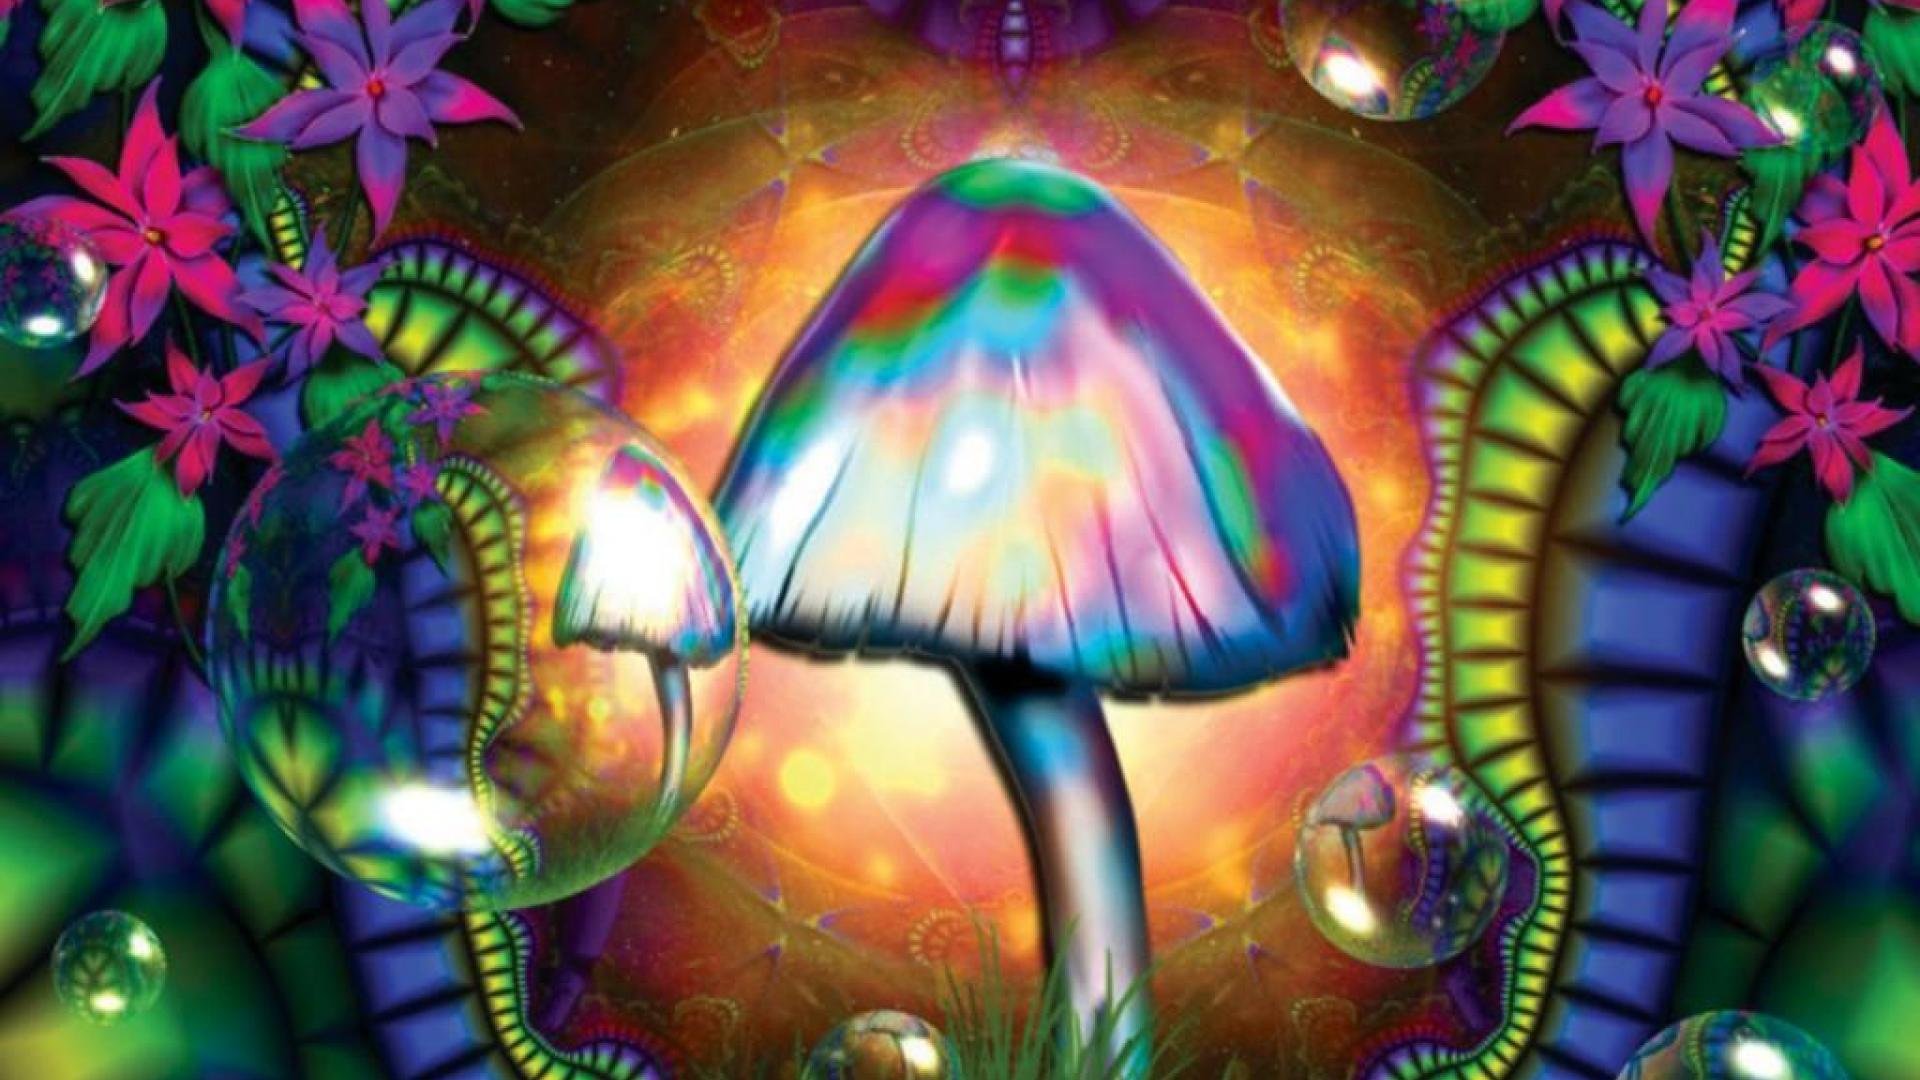 Trippy Mushroom Wallpaper For Iphone - Uncalke.com